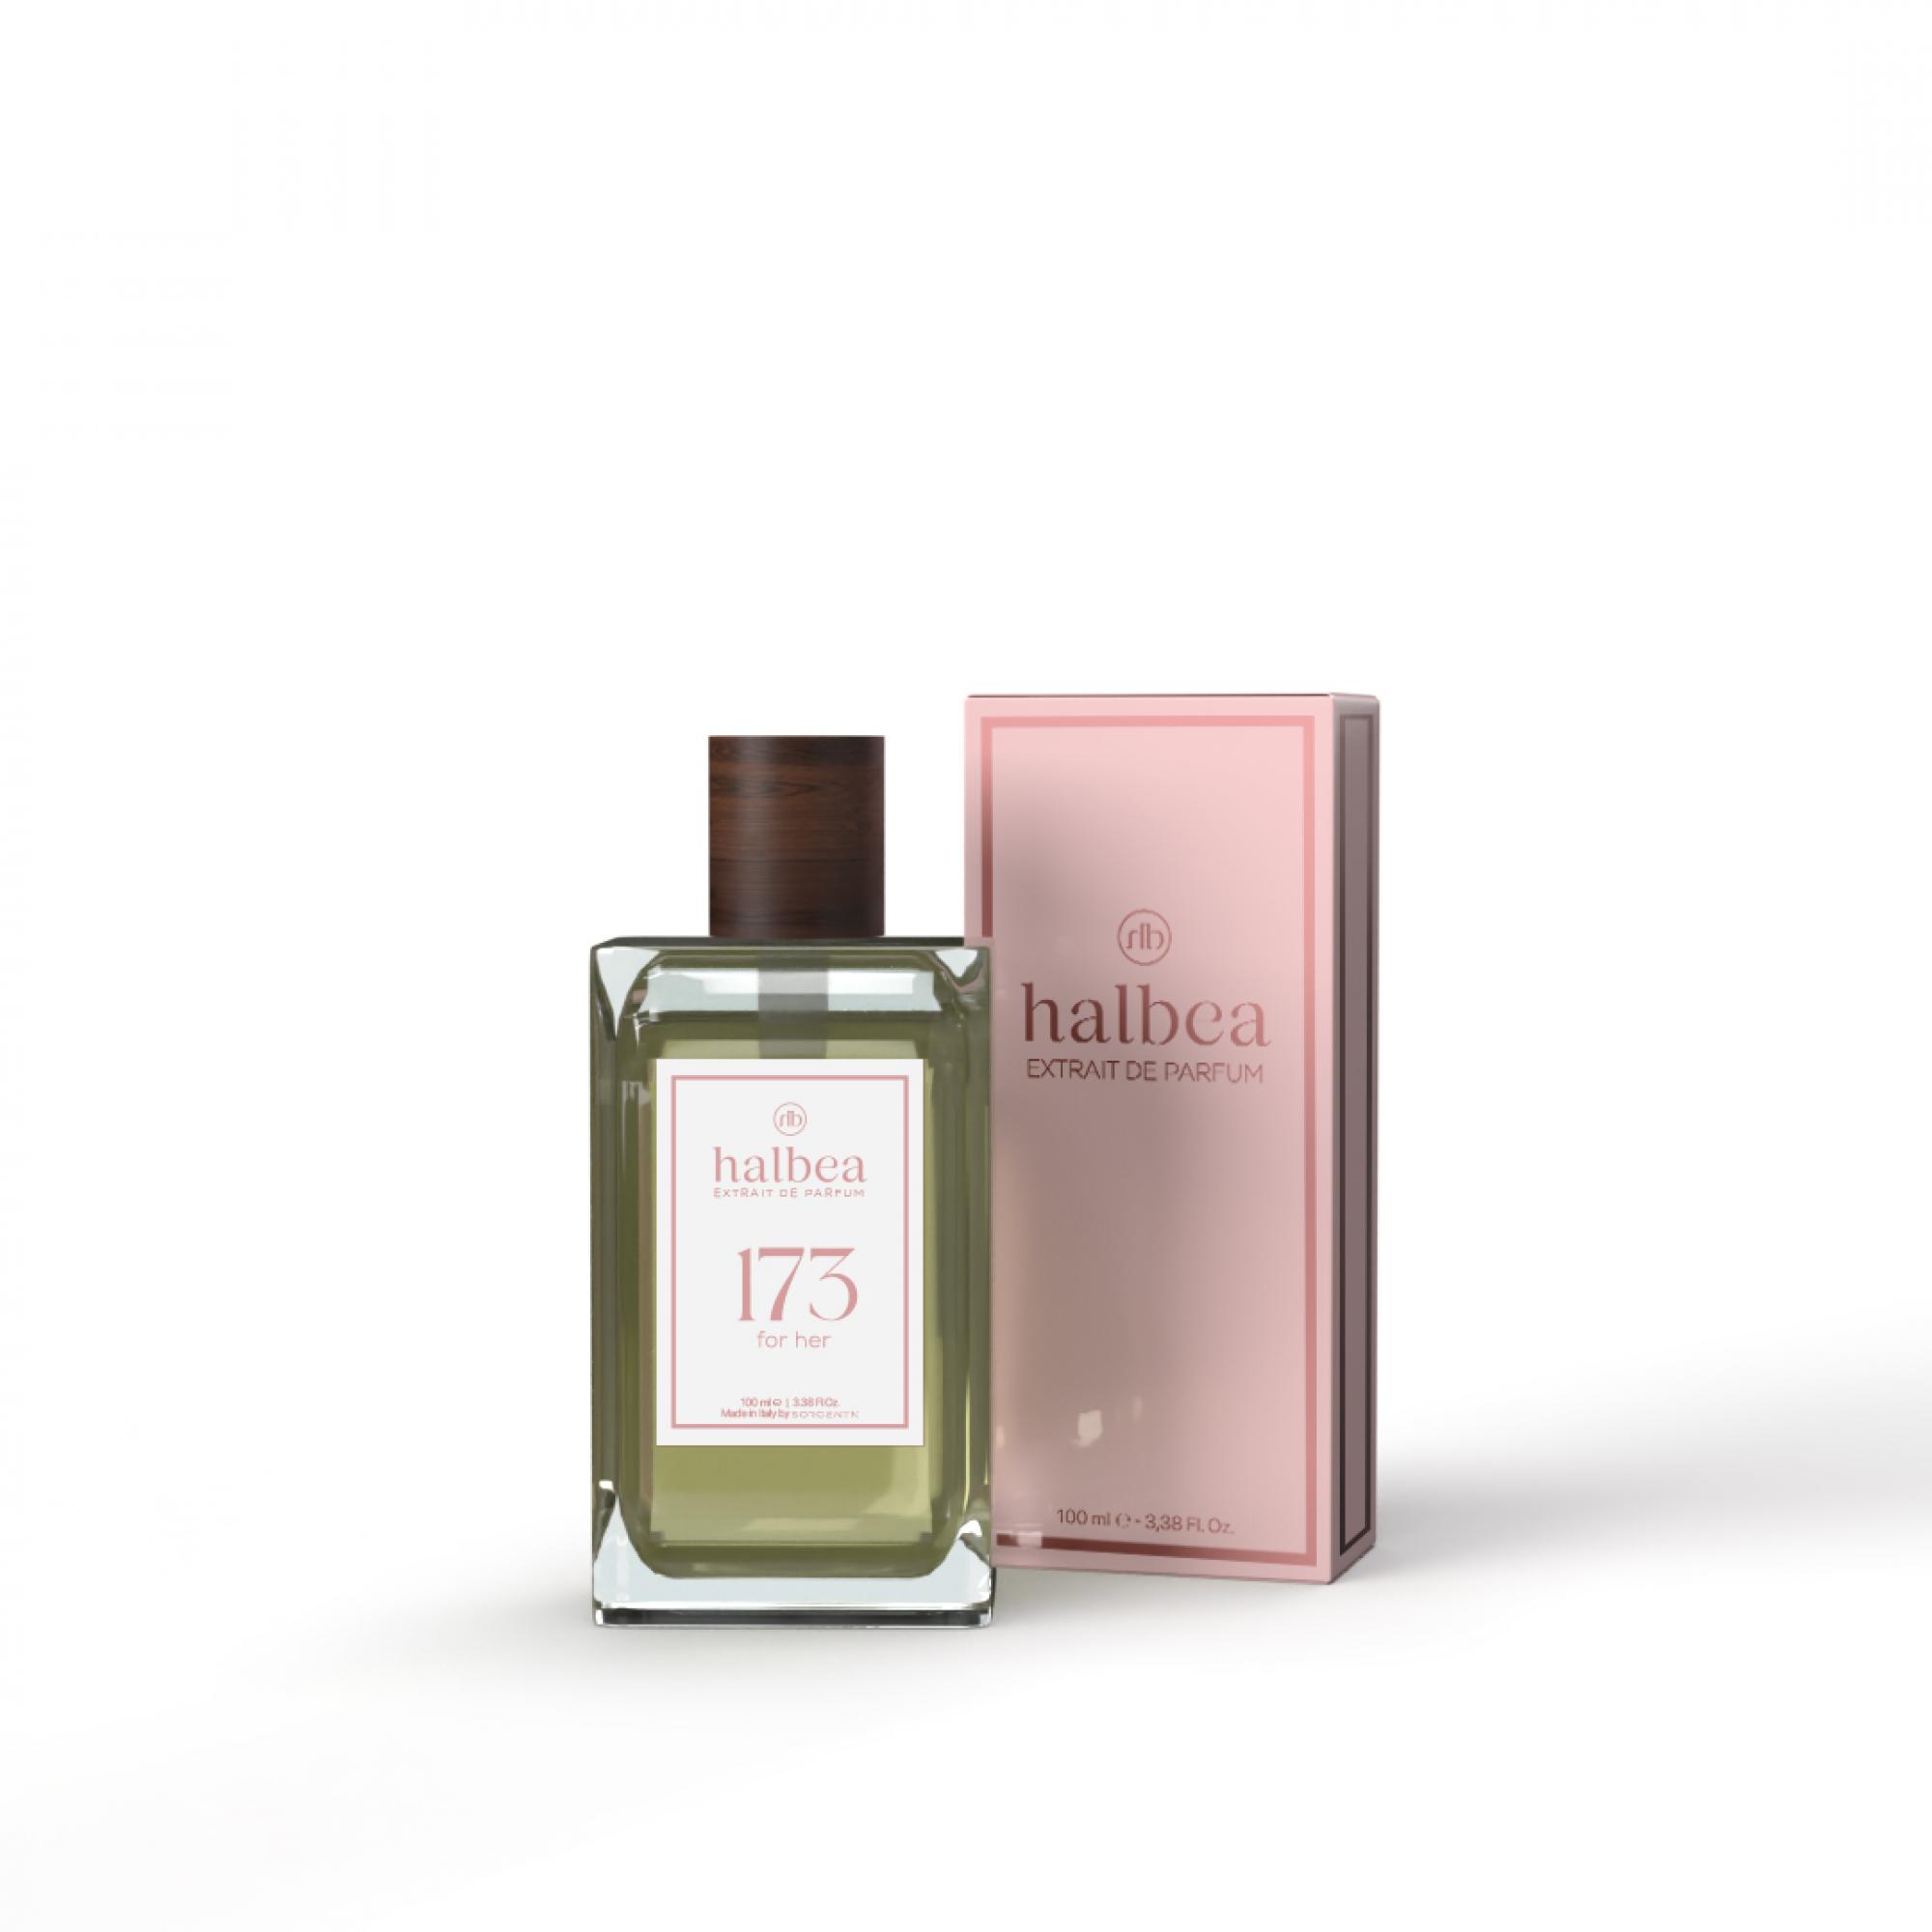 Halbea Parfum Nr. 173 insp. by Chanel Chance Sorgenta 100ml